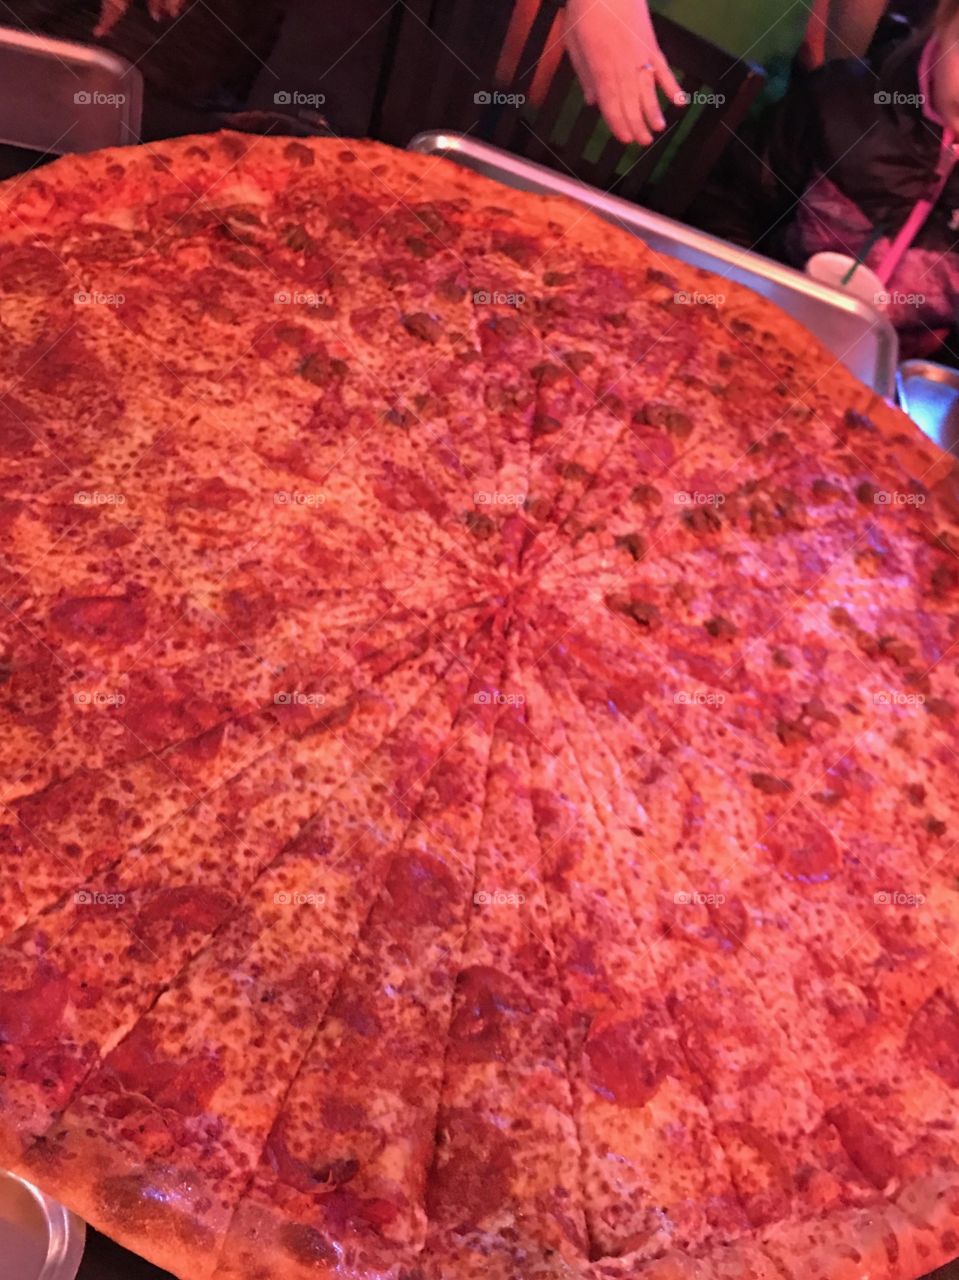 Big azz pizza